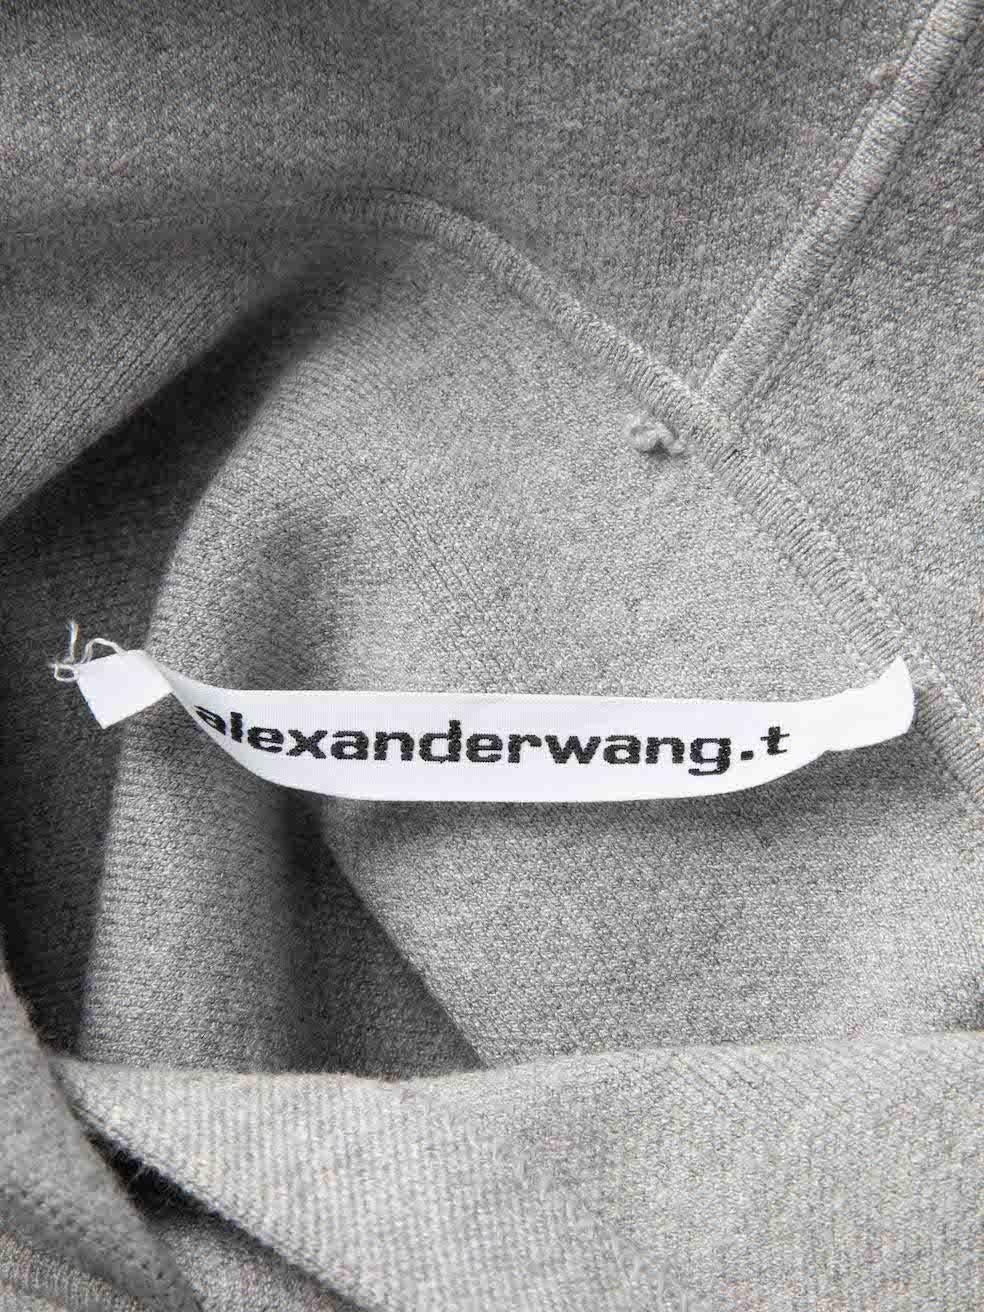 Alexander Wang Women's Alexander Wang.T Grey Hooded Sweater Dress 1